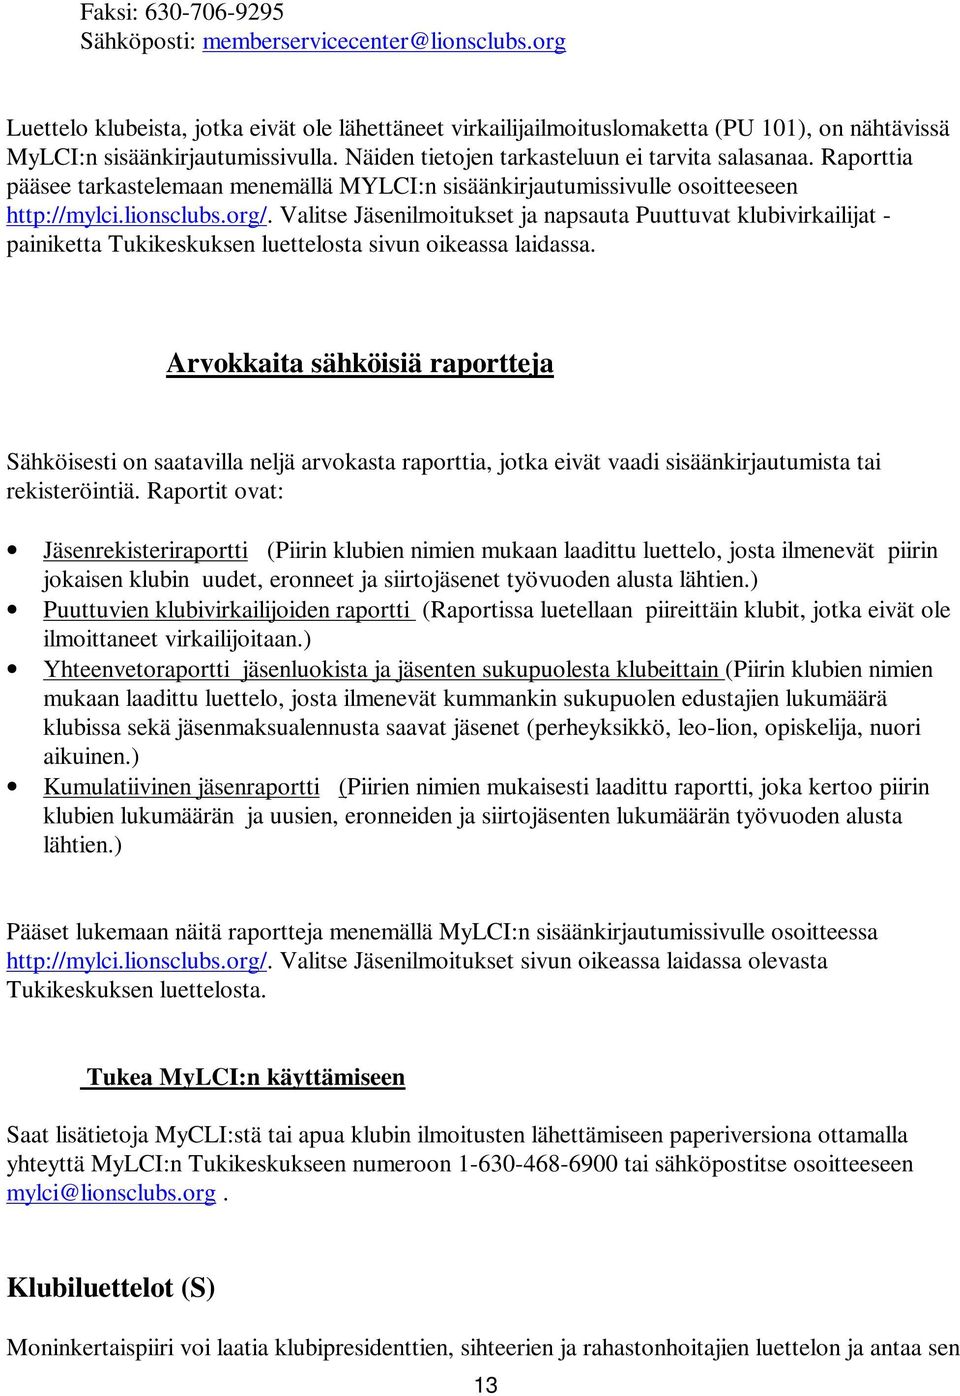 Valitse Jäsenilmoitukset ja napsauta Puuttuvat klubivirkailijat - painiketta Tukikeskuksen luettelosta sivun oikeassa laidassa.